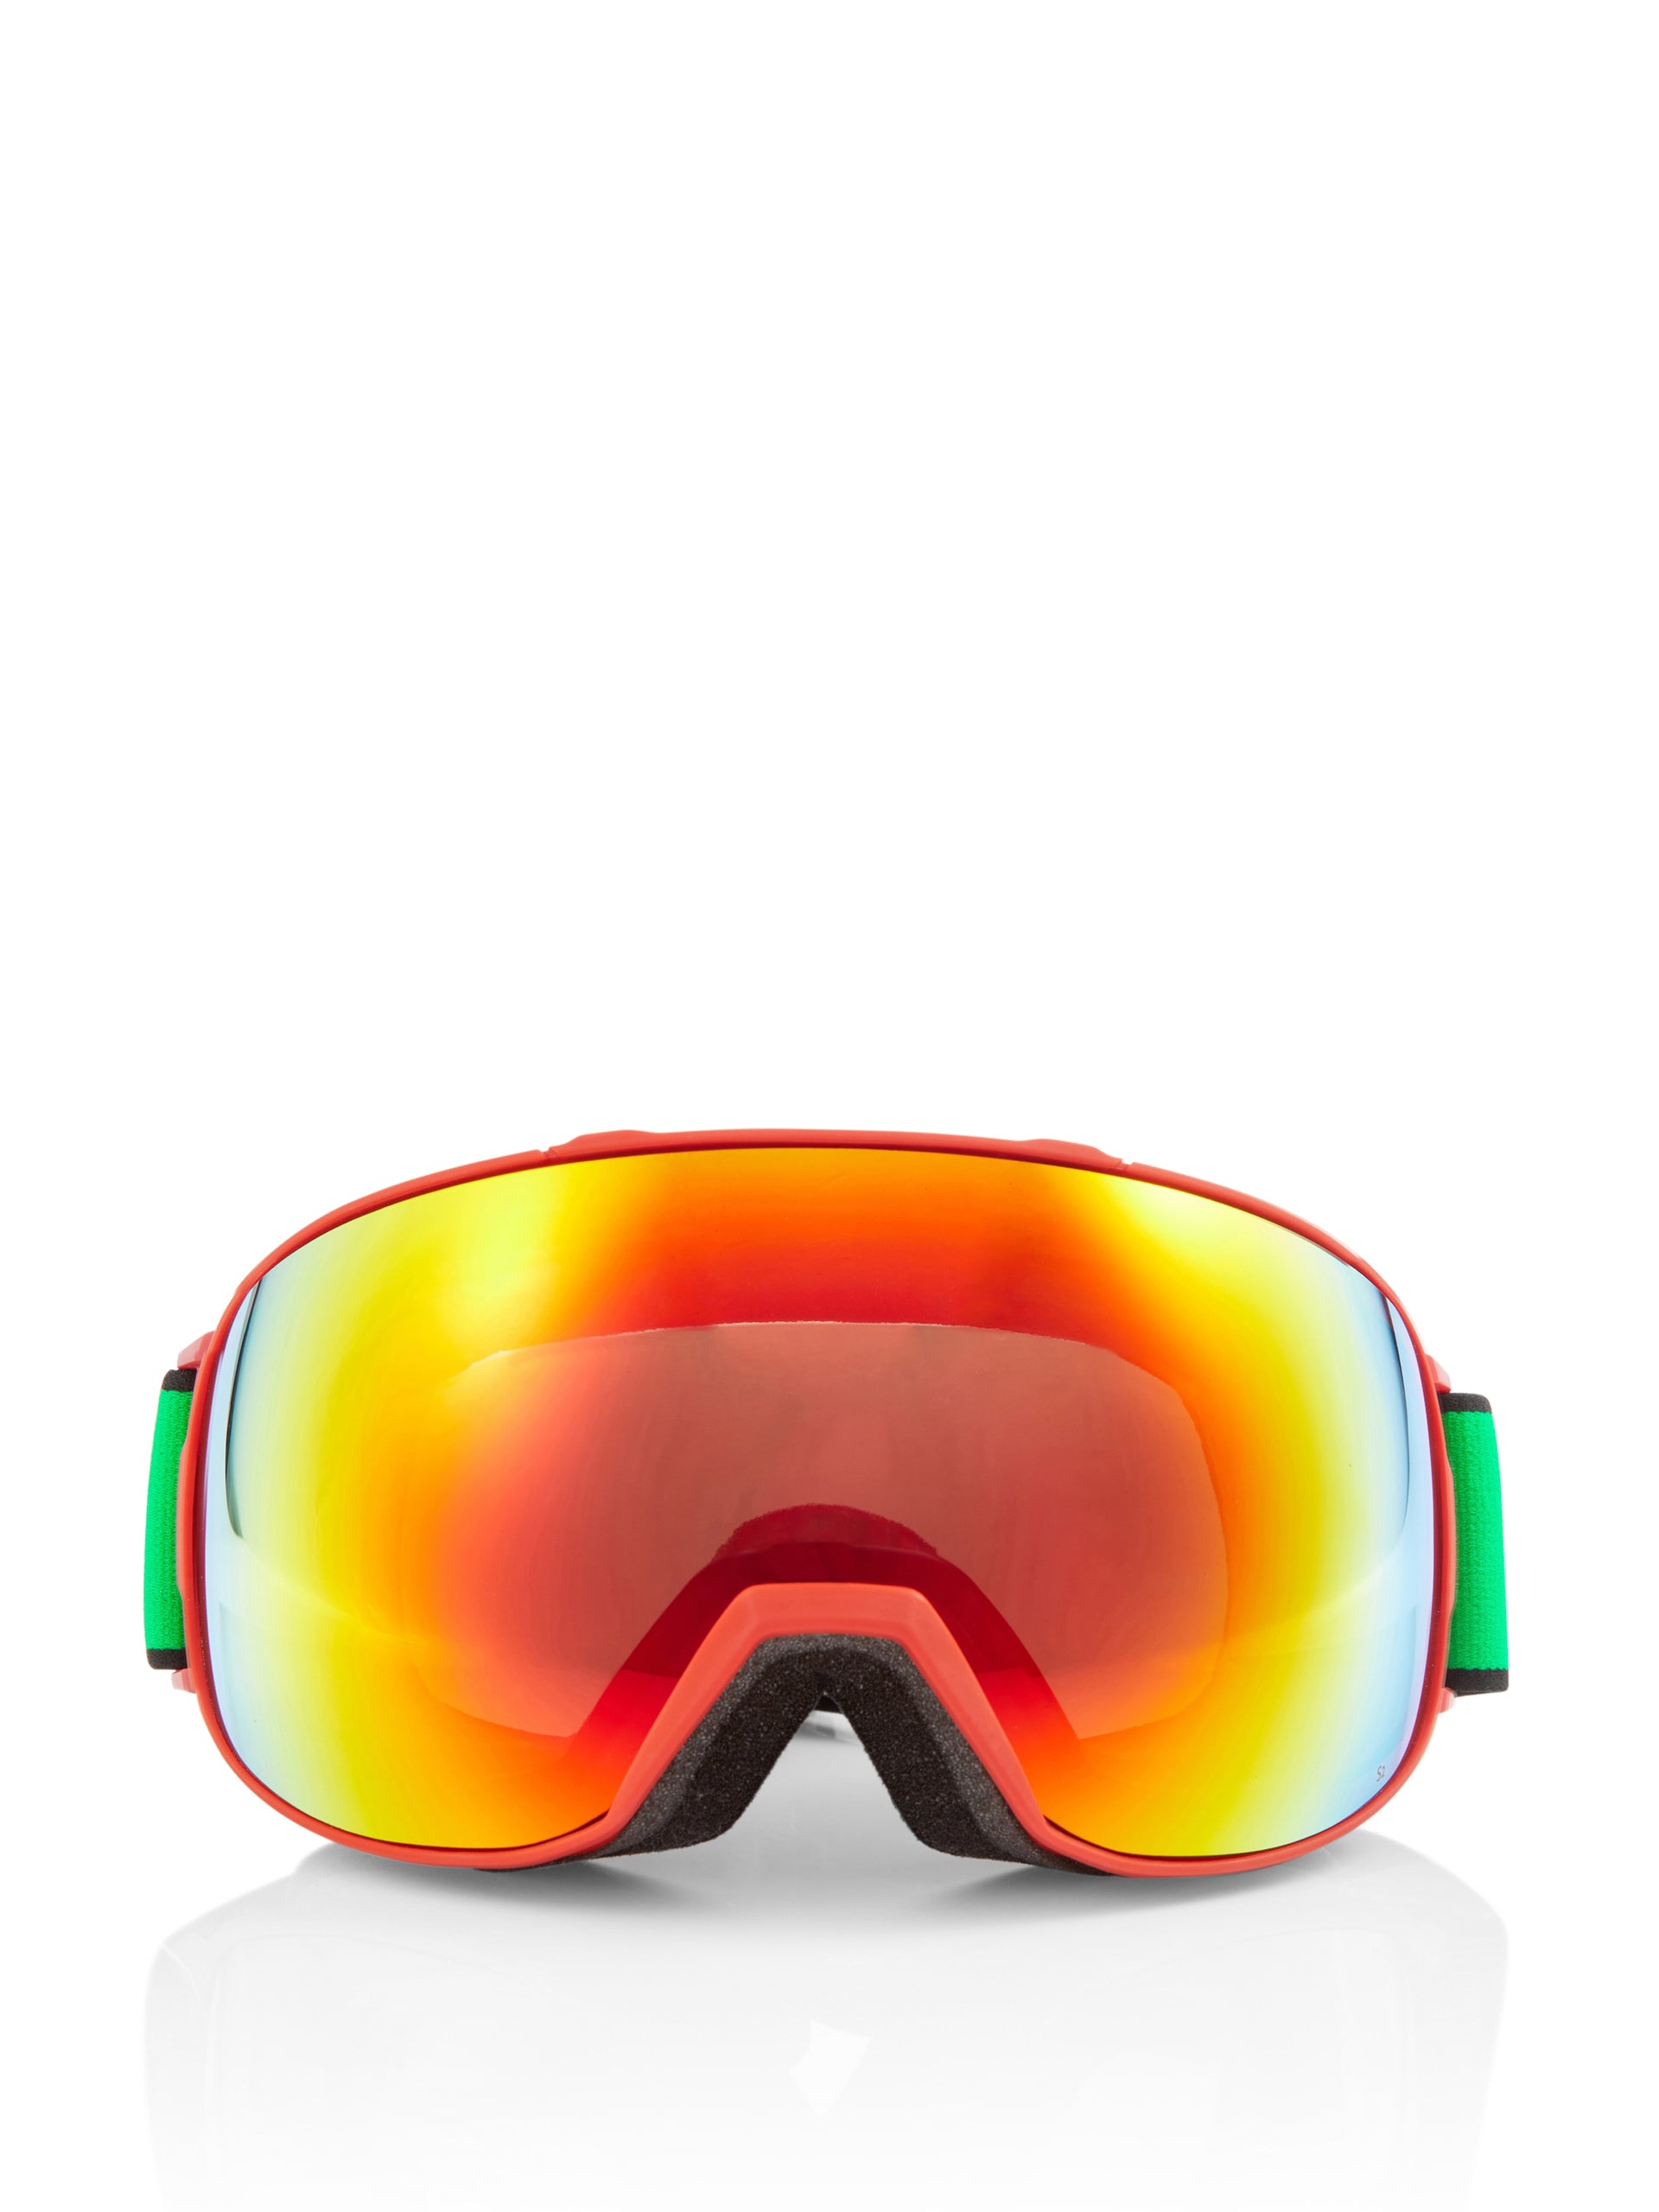 Mirrored ski goggles - Collagerie